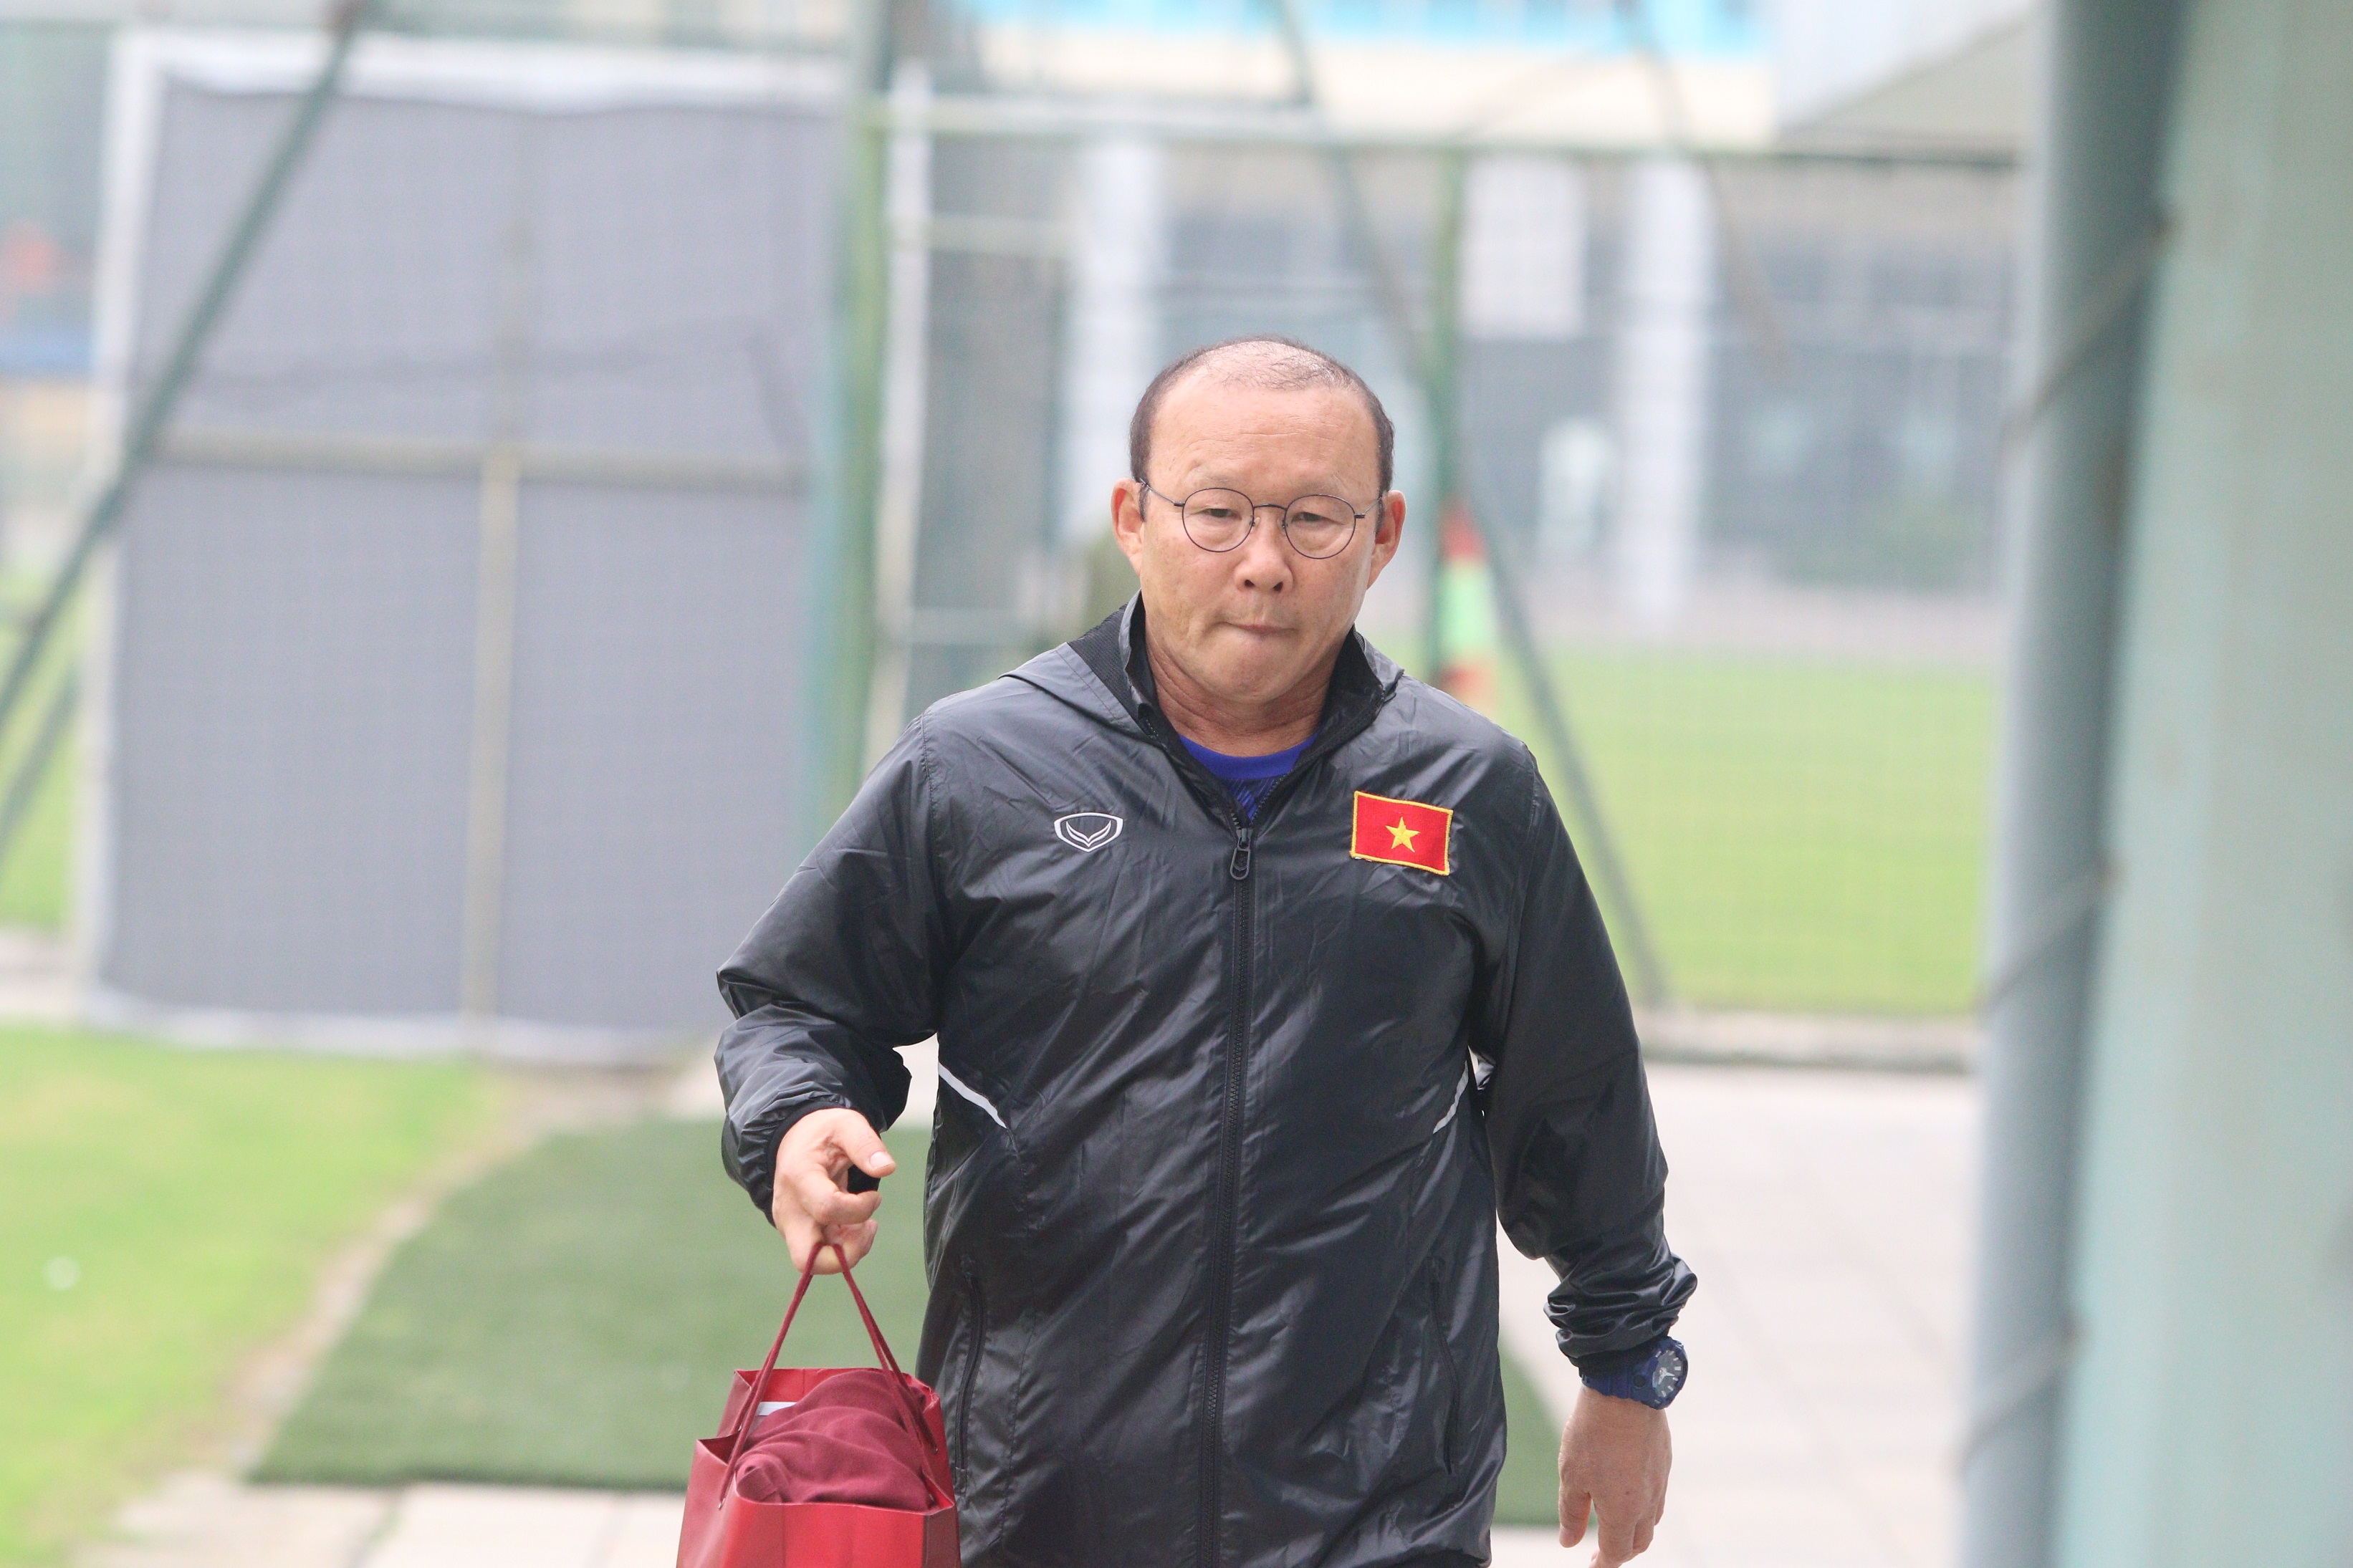 Tin bóng đá Việt Nam 17/3: HLV Park Hang Seo rút gọn danh sách U23 Việt Nam, Công Phượng được khen ngợi